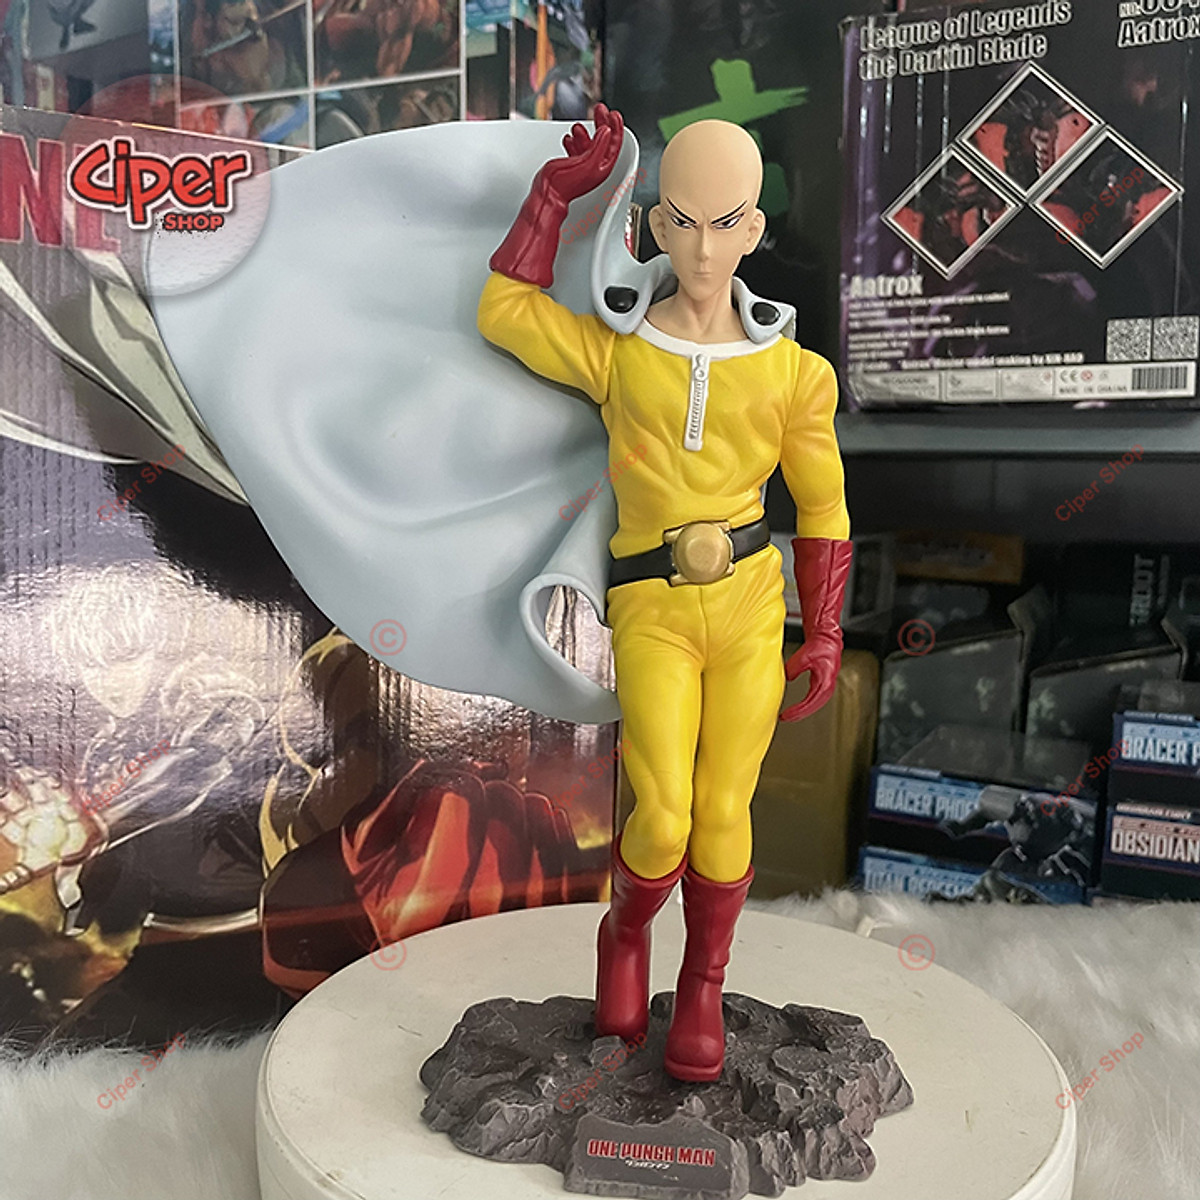 Bandai Spirits Mô hình nhân vật Saitama Metalic Color DXF Premium Prize  Figure dòng One Punch Man 20cm OPMBP01  GameStopvn